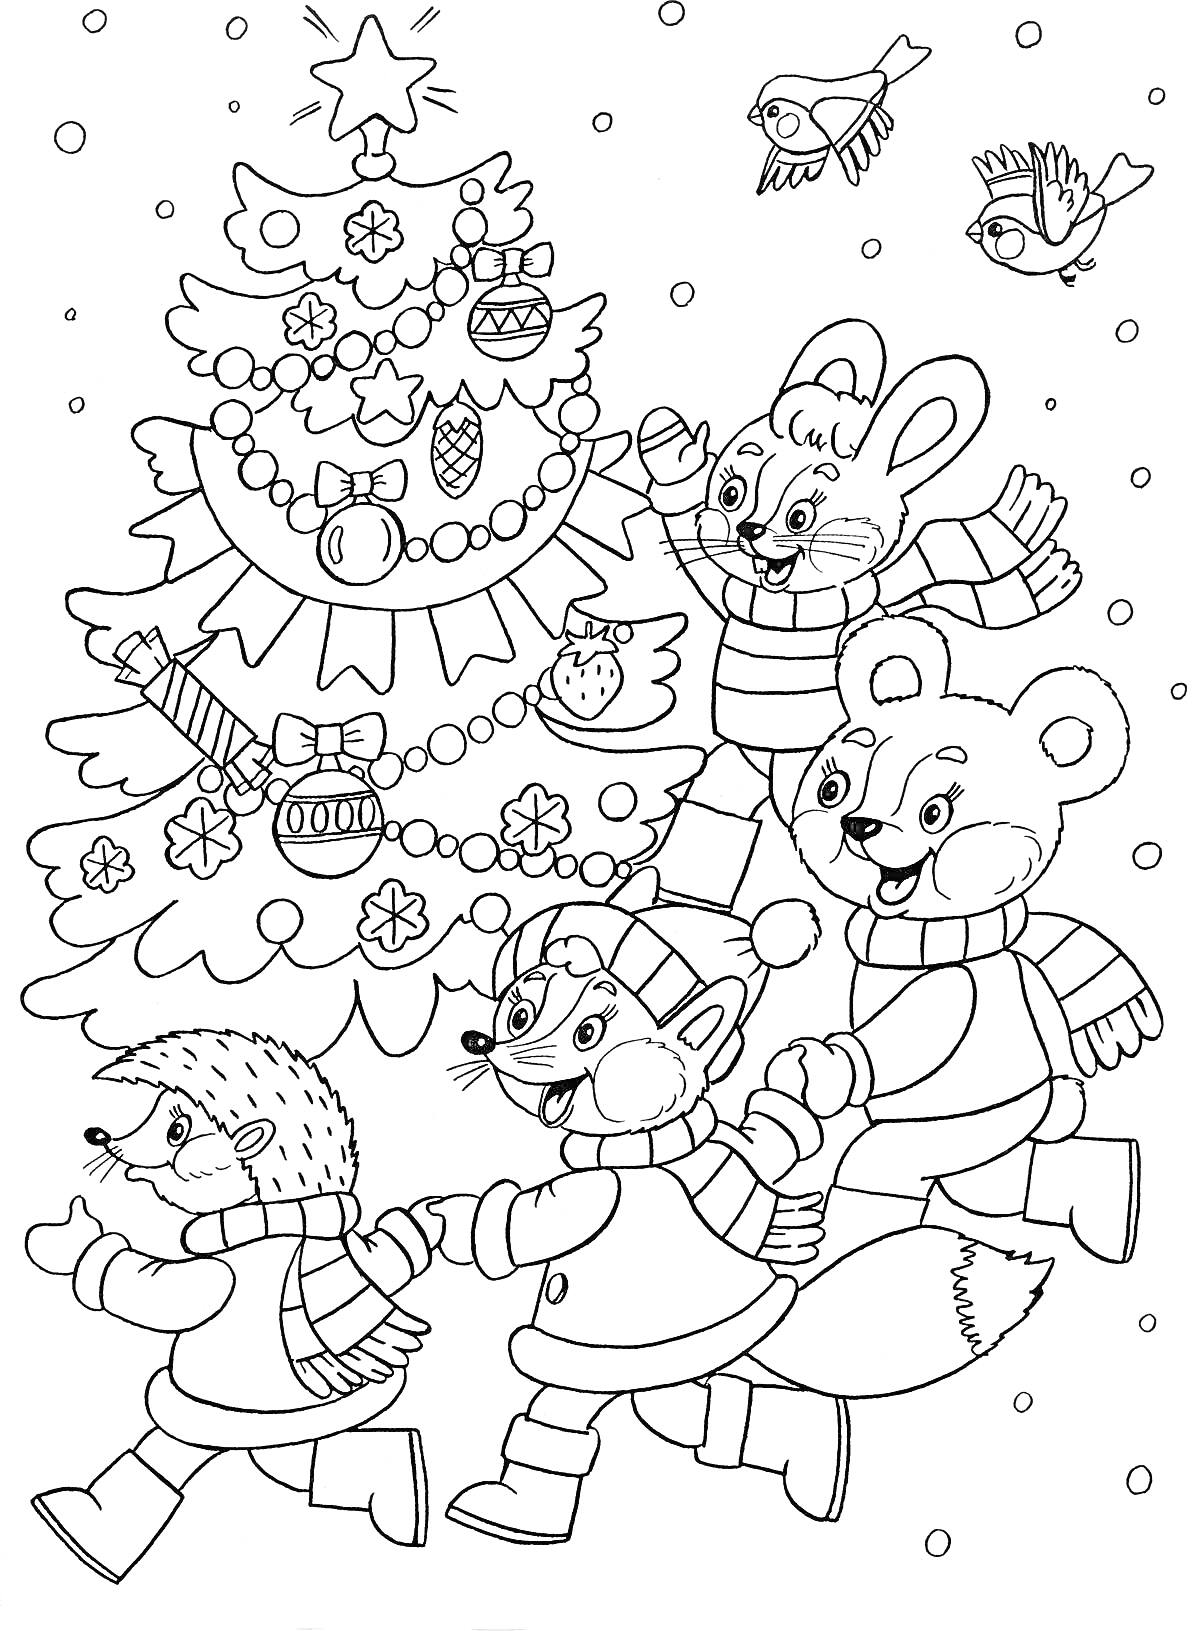 Раскраска Елка, украшенная игрушками, вокруг которой водят хоровод еж, лиса, заяц и медведь в шарфиках и шапках, снежинки и птицы